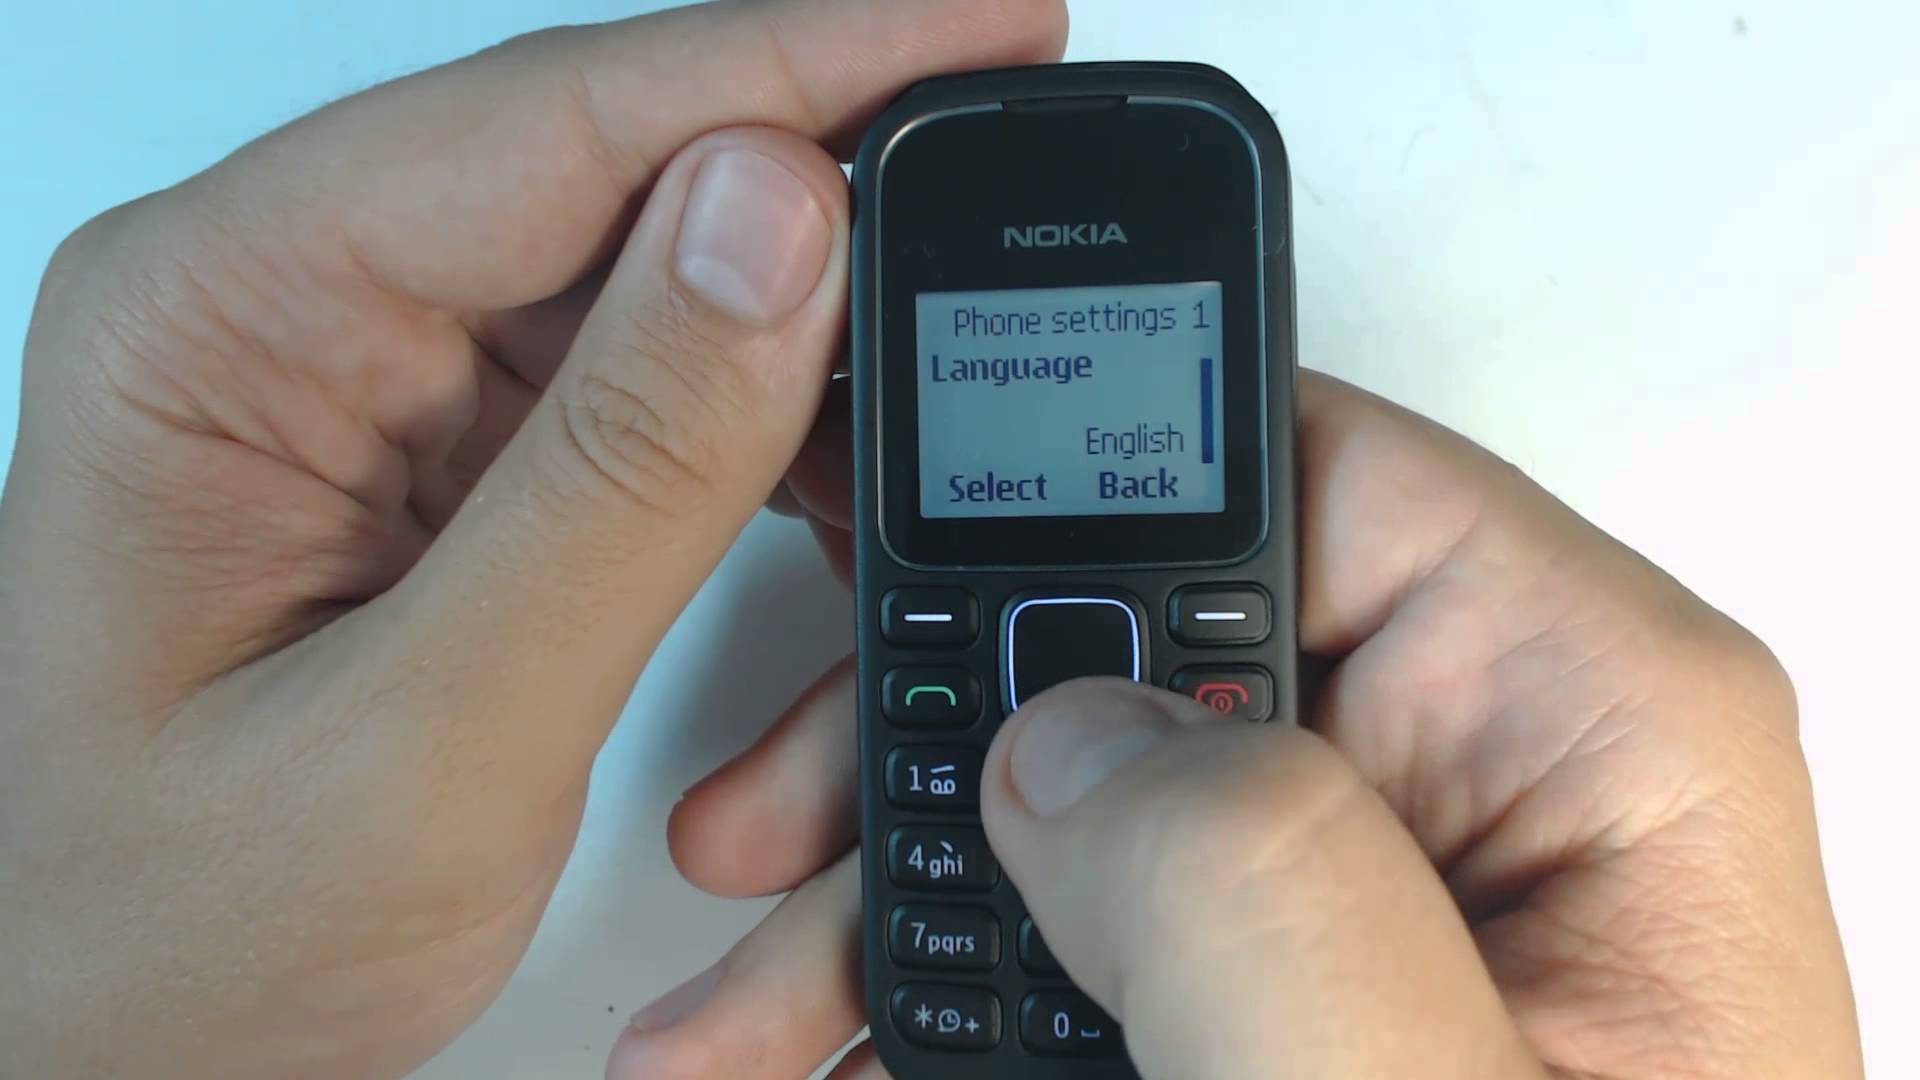 Nokia 105 Nokia 1280